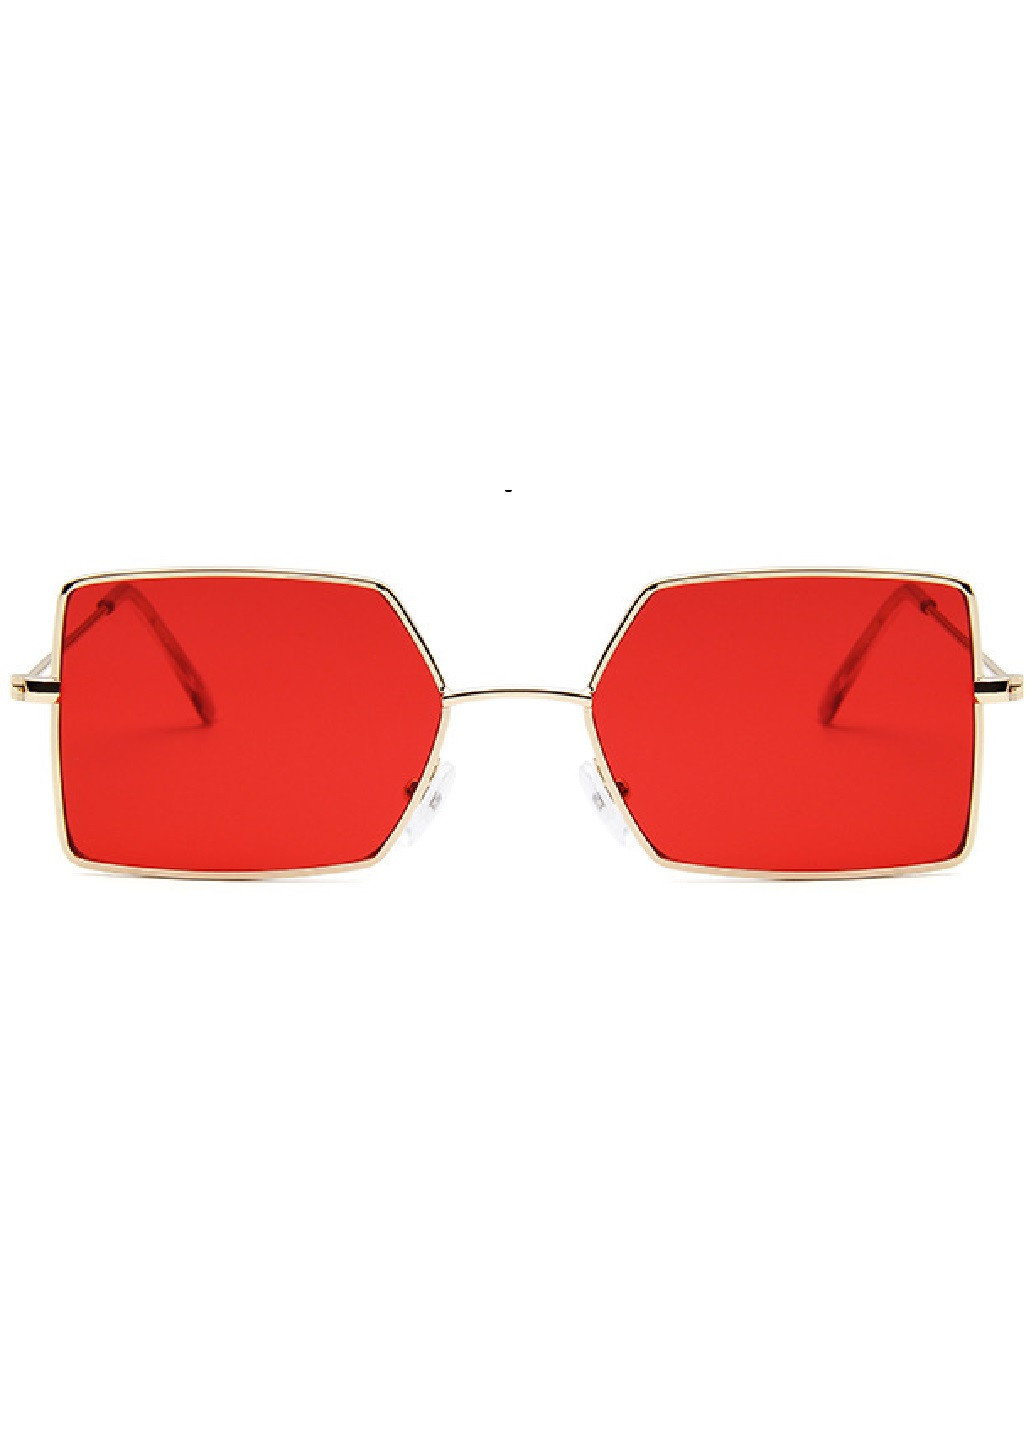 Солнцезащитные очки A&Co. красные